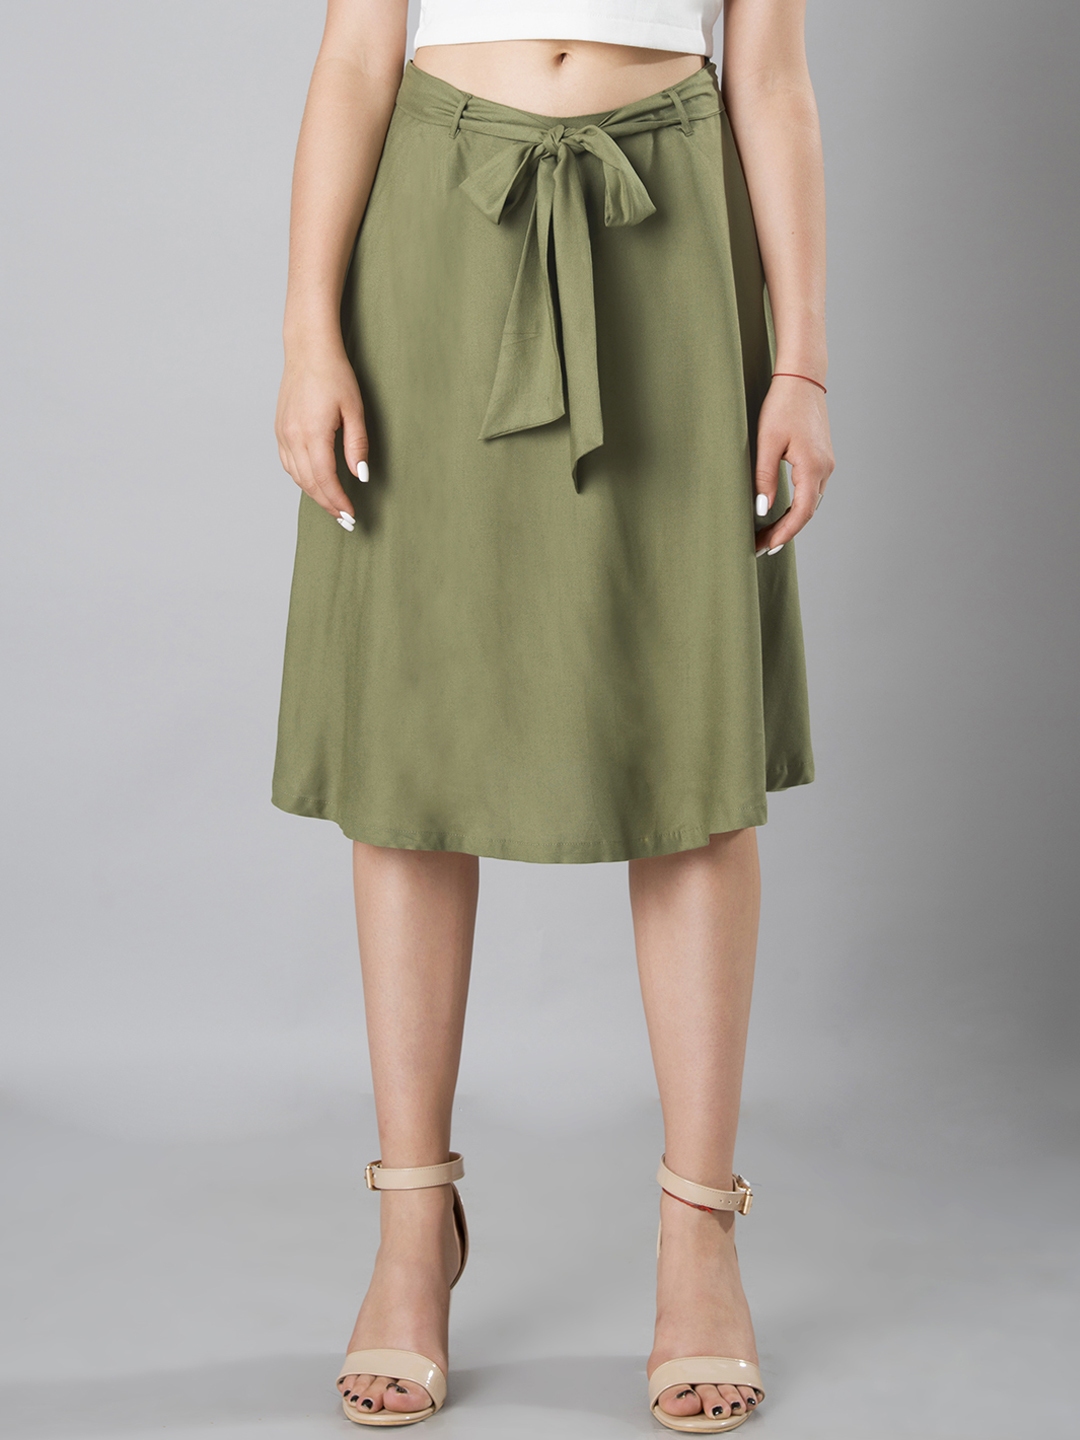 Buy Faballey Olive Green Knee Length Skirt Skirts For Women 2106781 Myntra 6375